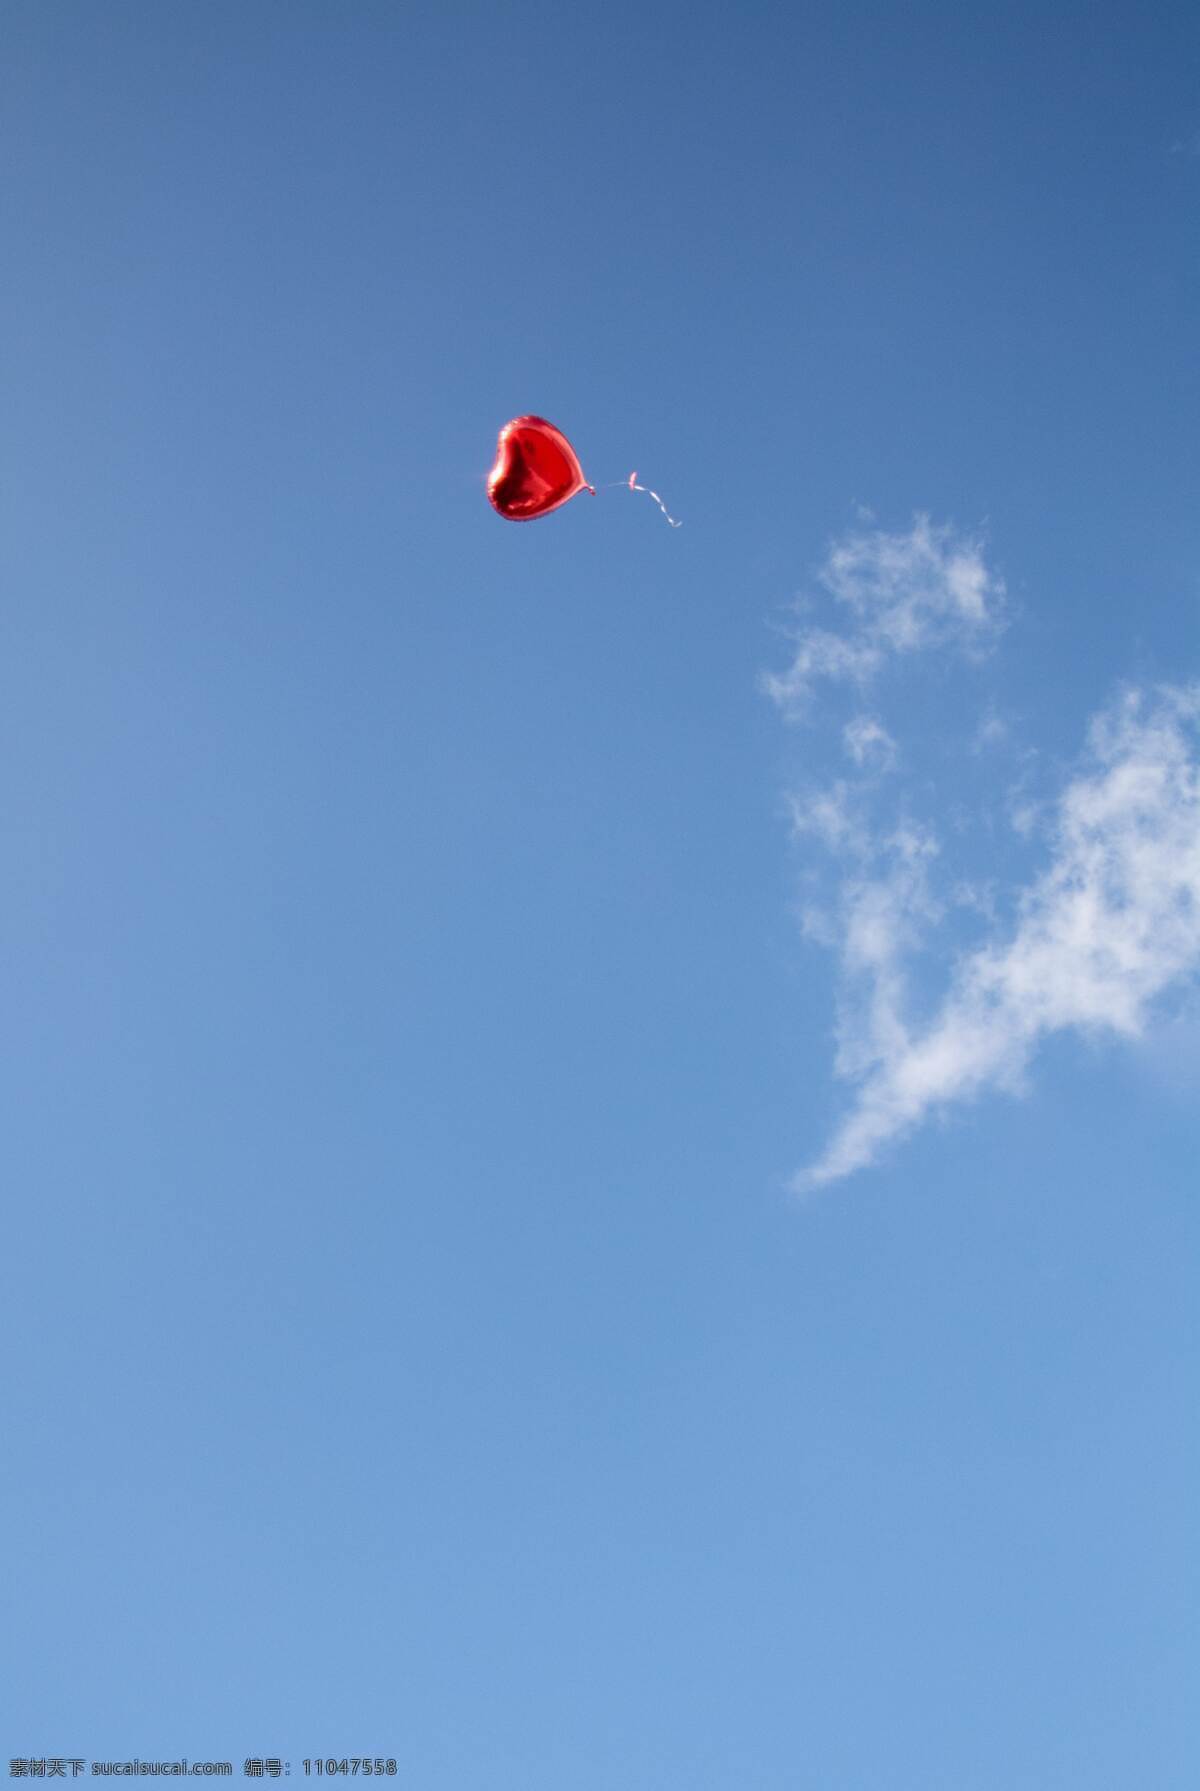 天空爱心气球 天空 爱心气球 红色 蓝色 蓝天 白云 云朵 云彩 蓝天白云 自然景观 自然风光 海报背景 海报素材 壁纸